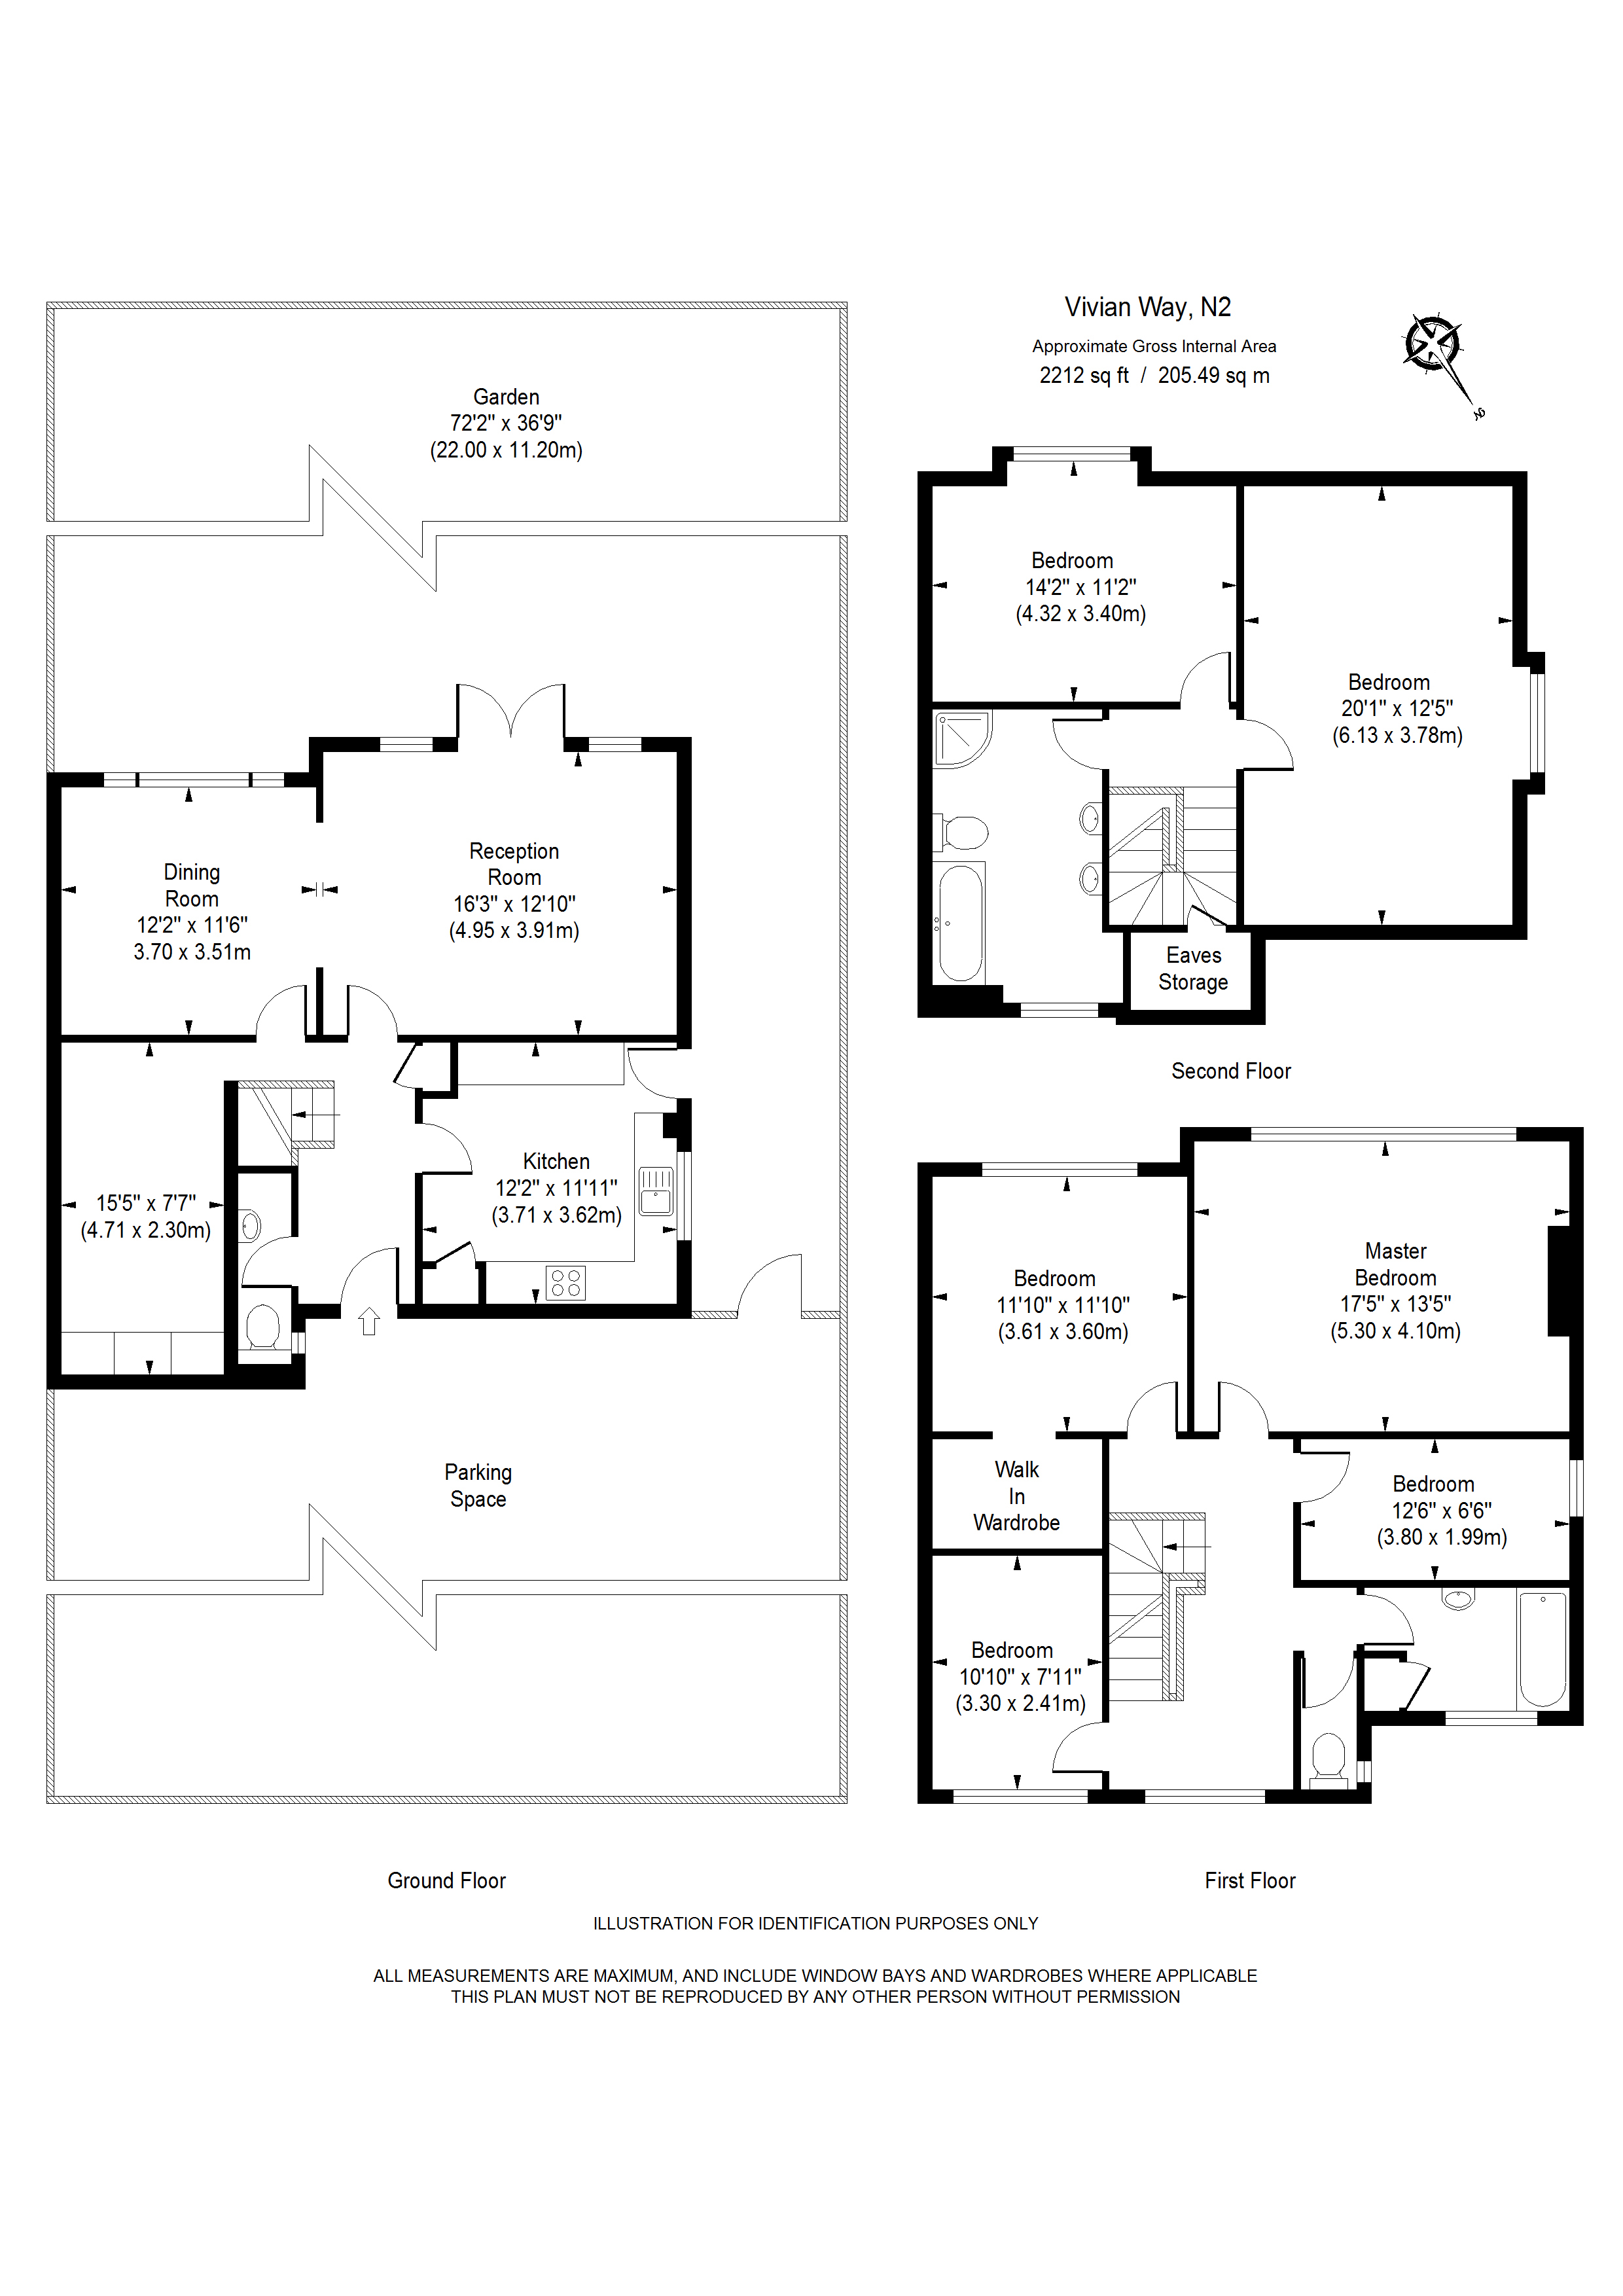 6 Bedrooms Semi-detached house to rent in Vivian Way, London N2